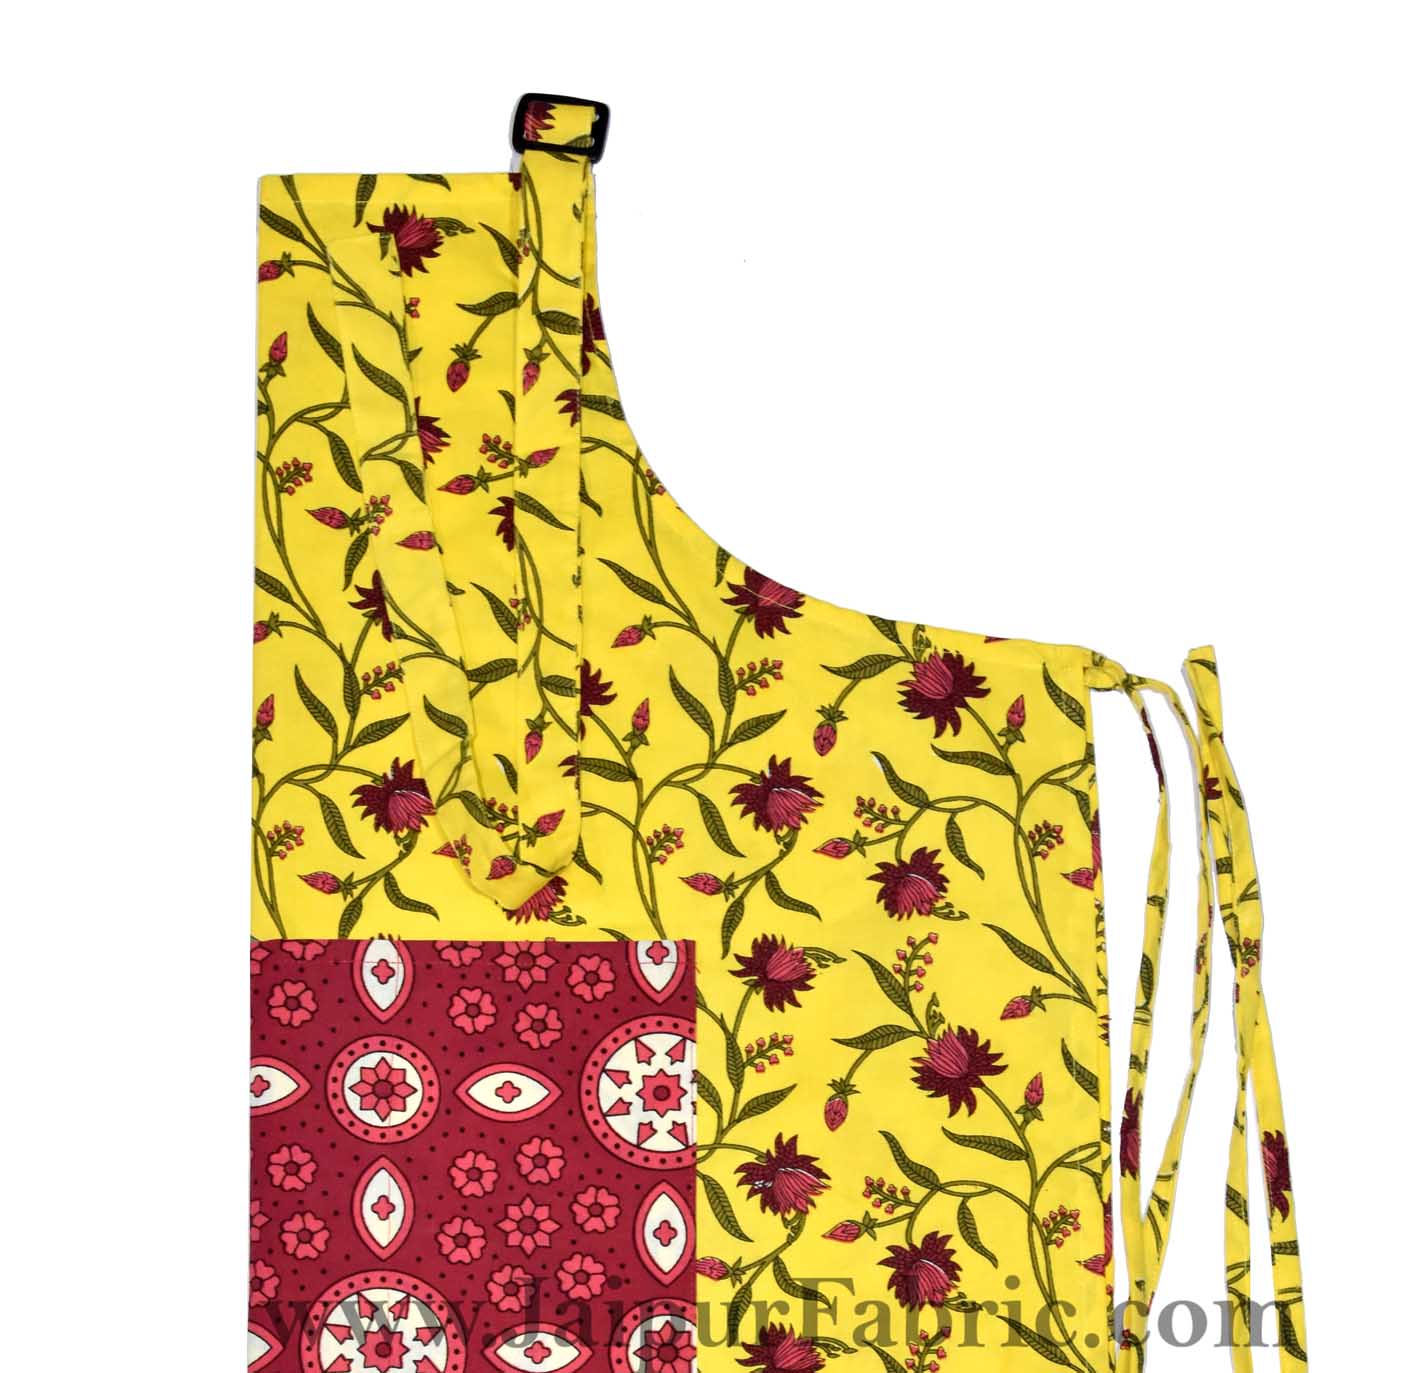 Floral Motif print yellow apron